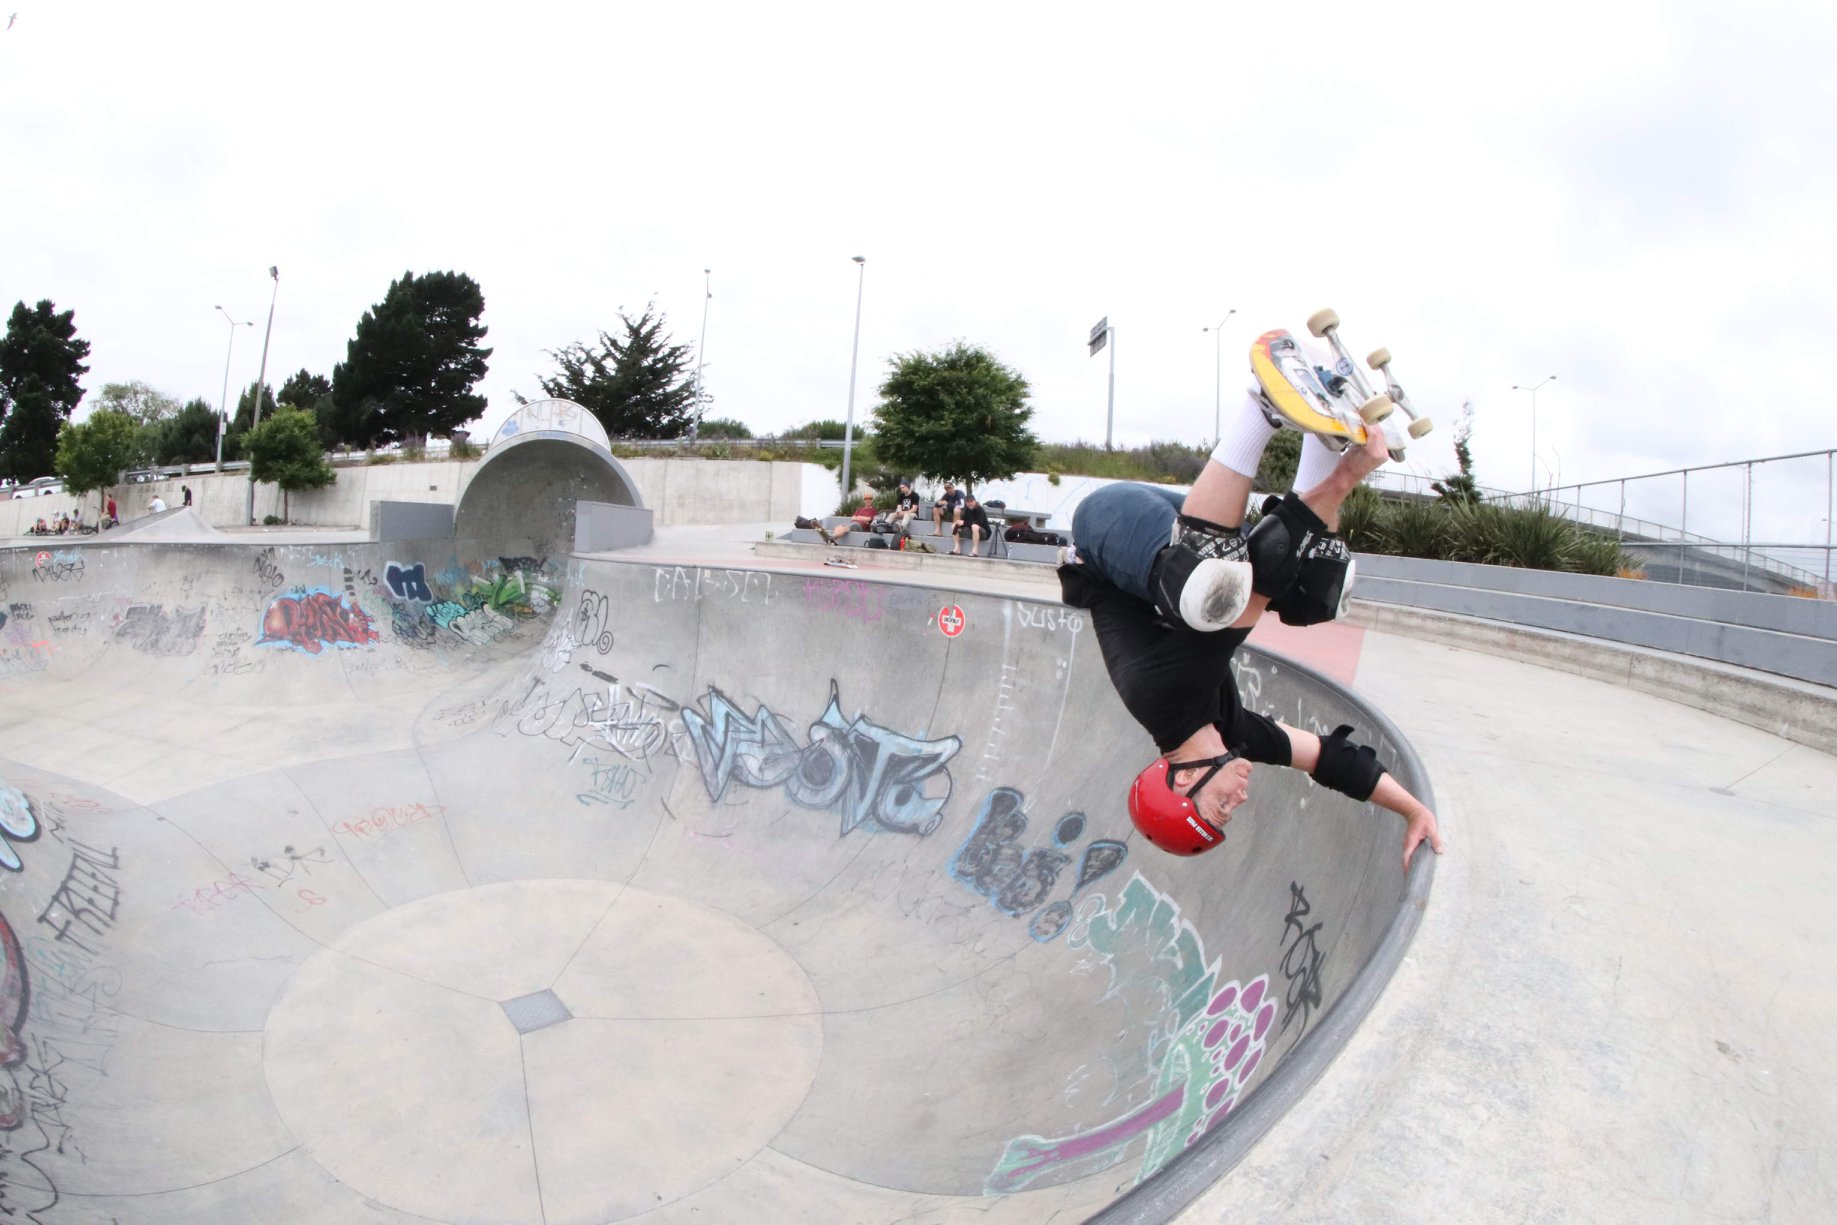 Invert at Washington Way skatepark Christchurch photo by Will Bartlet